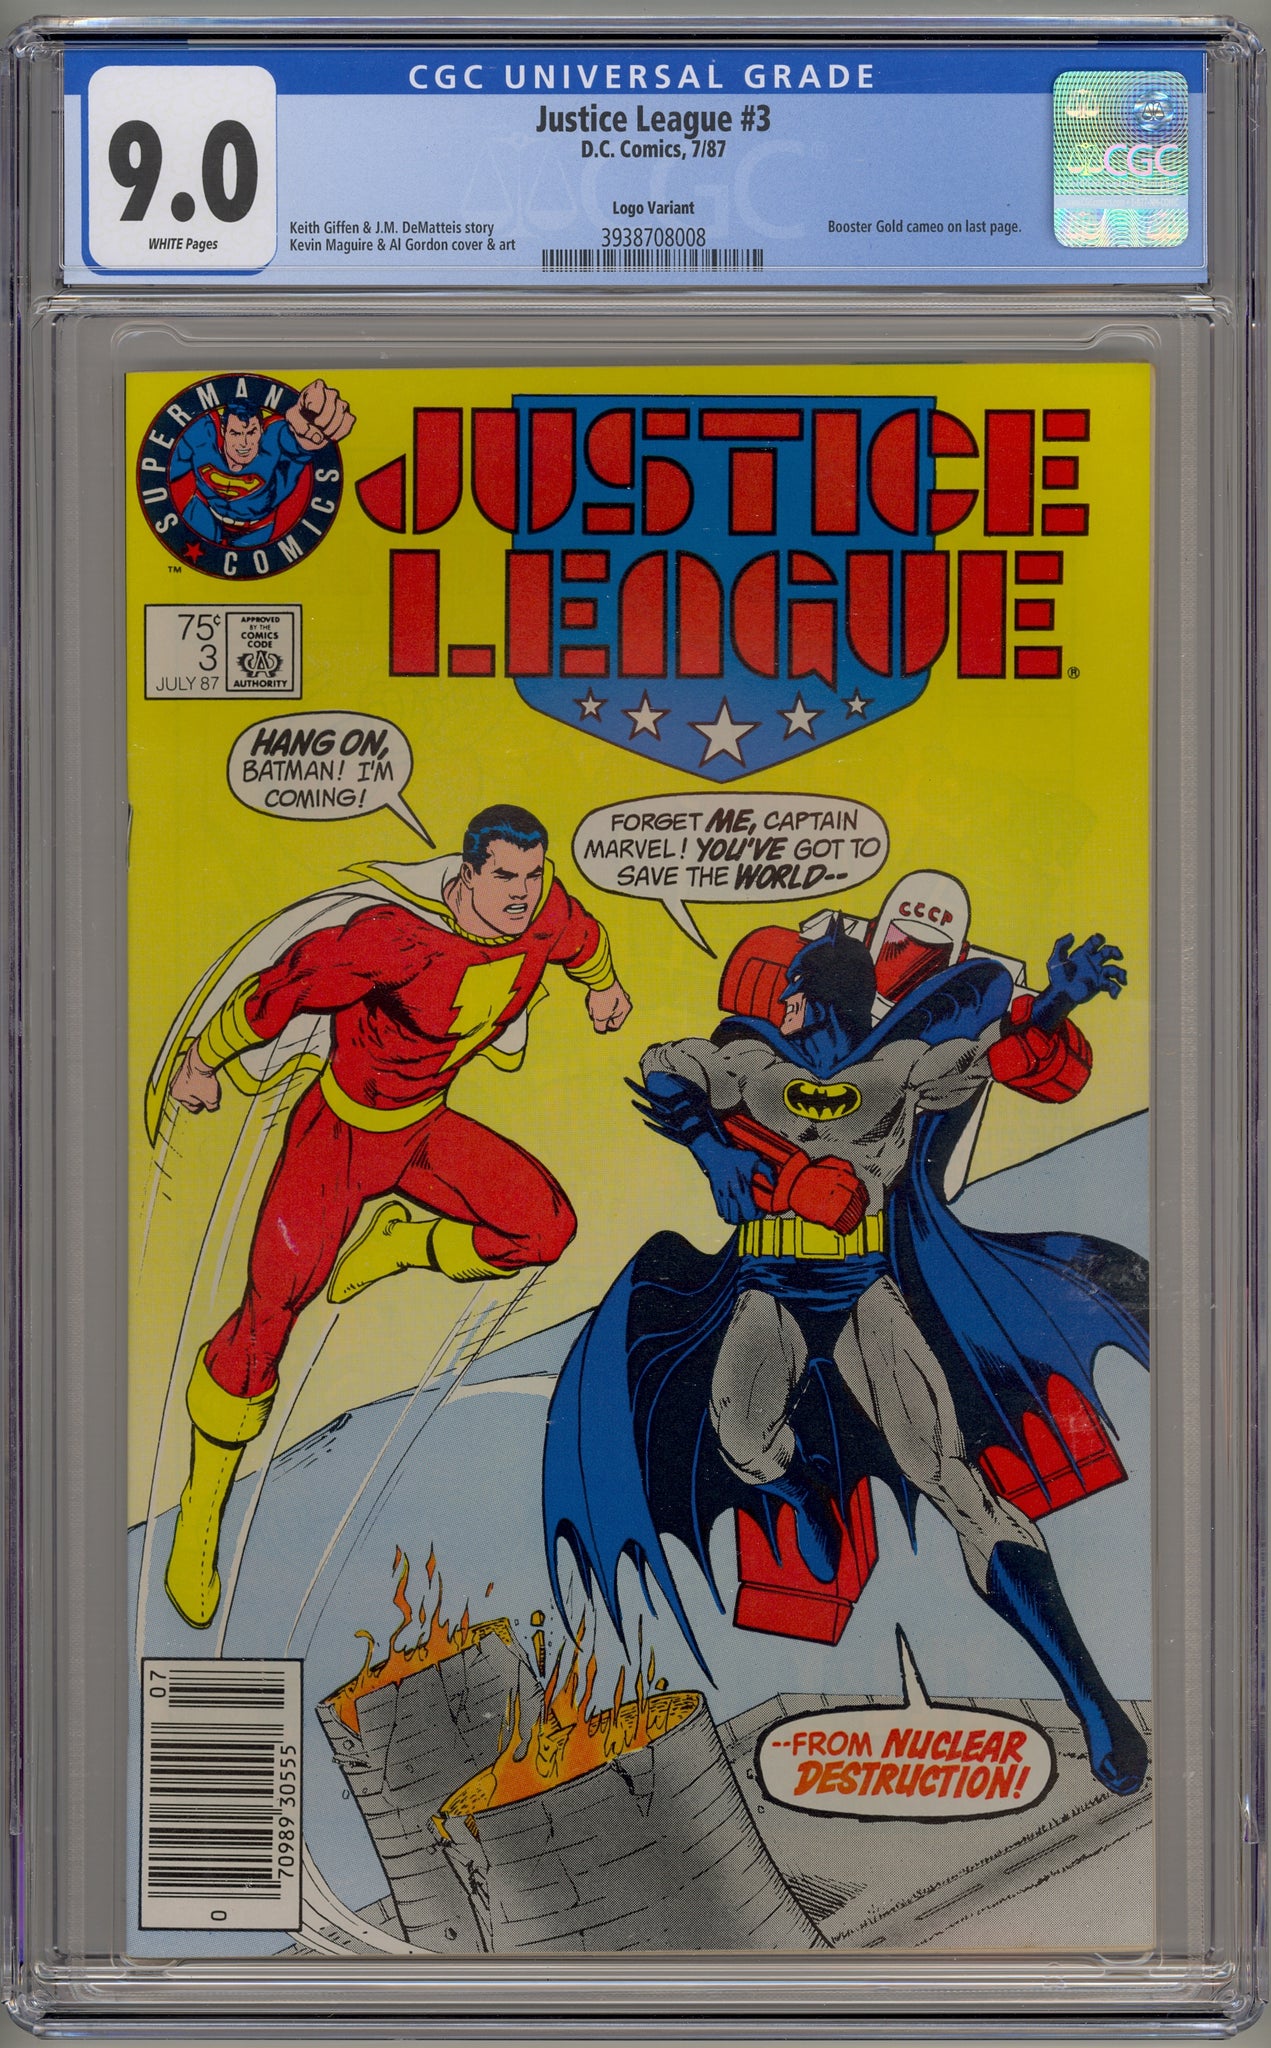 Justice League #3 (1987) DC test logo variant